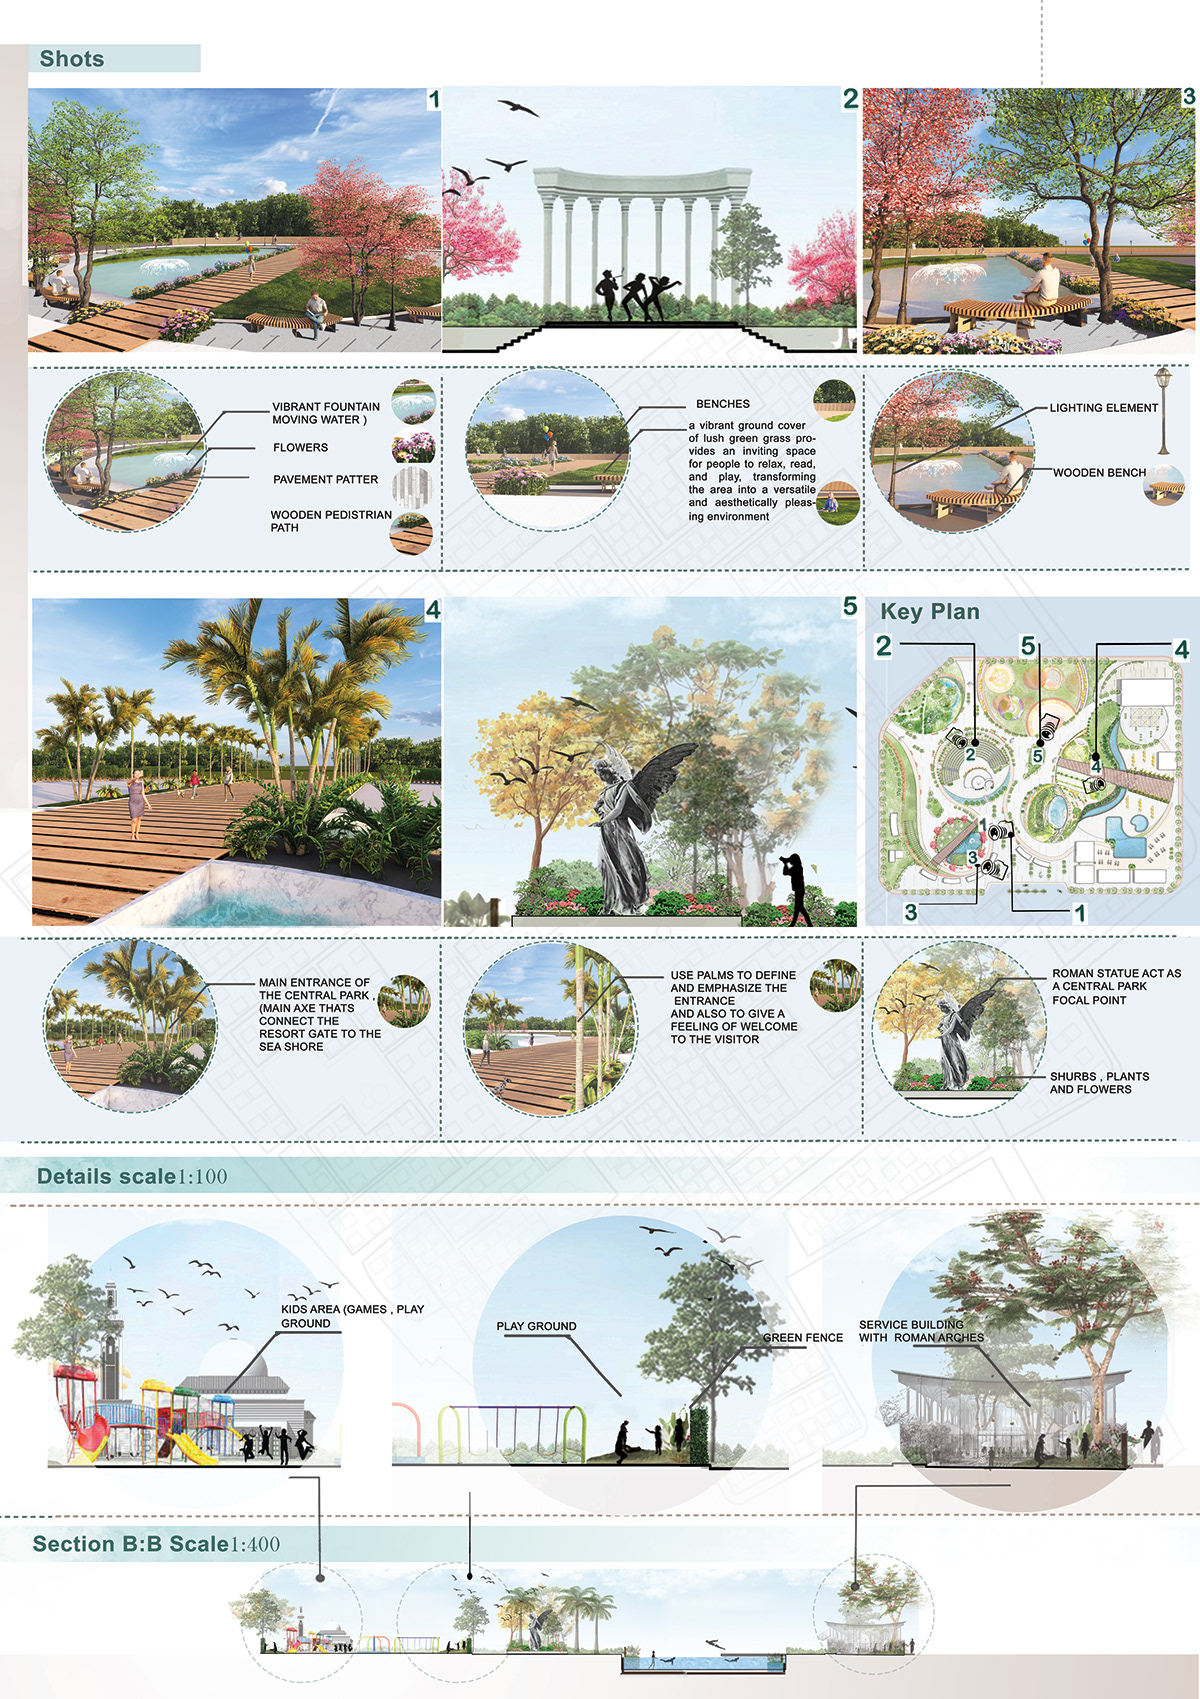 Park Landscape architecture visualization Render lumion revit centralpark landscapes resort